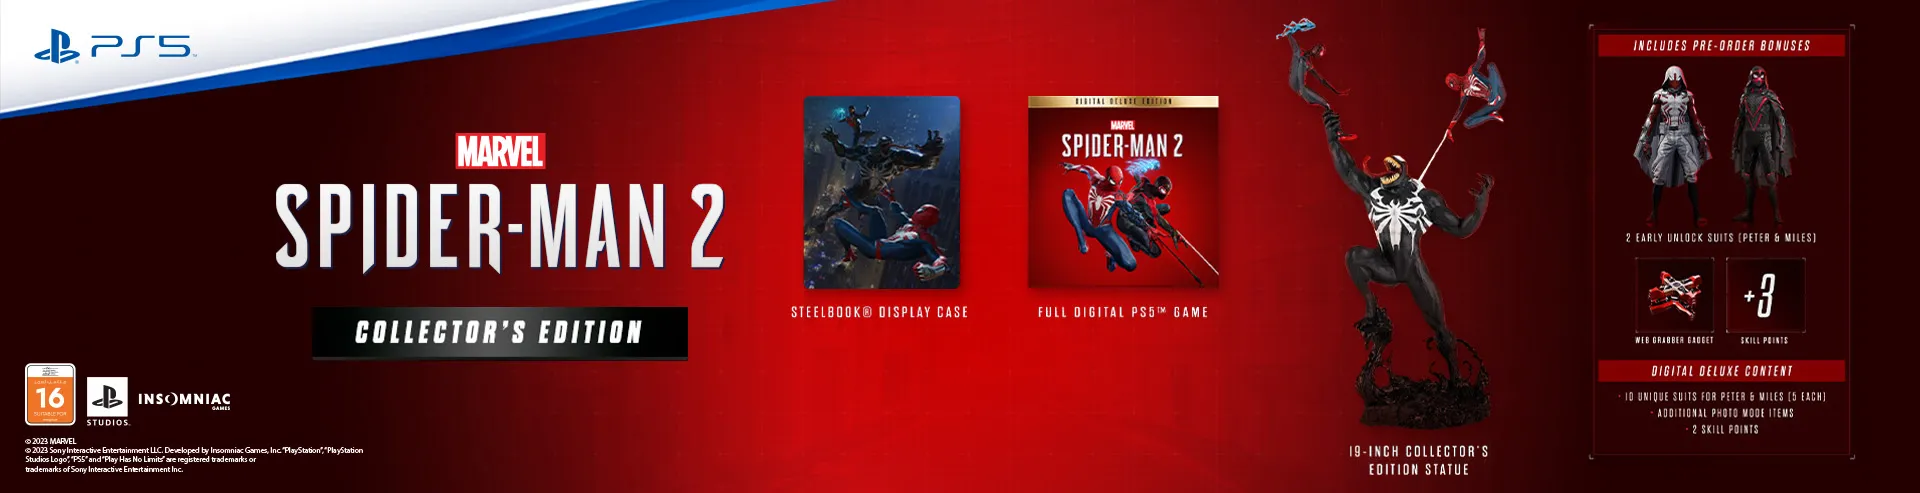 VM-Hero-PS5-Spider-Man-2-Collectors-Edition-1920x493_.webp